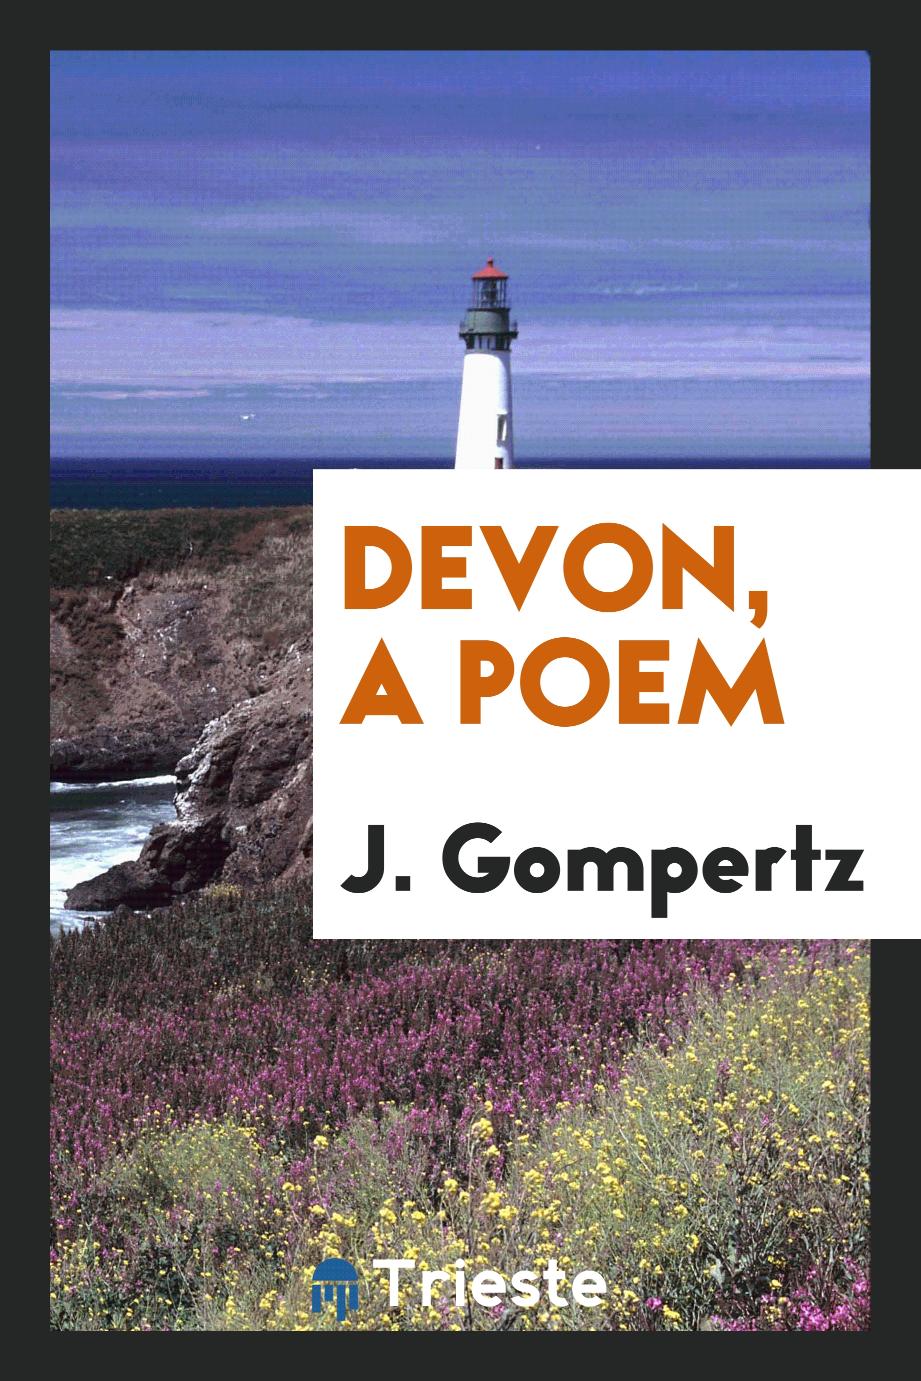 Devon, a poem